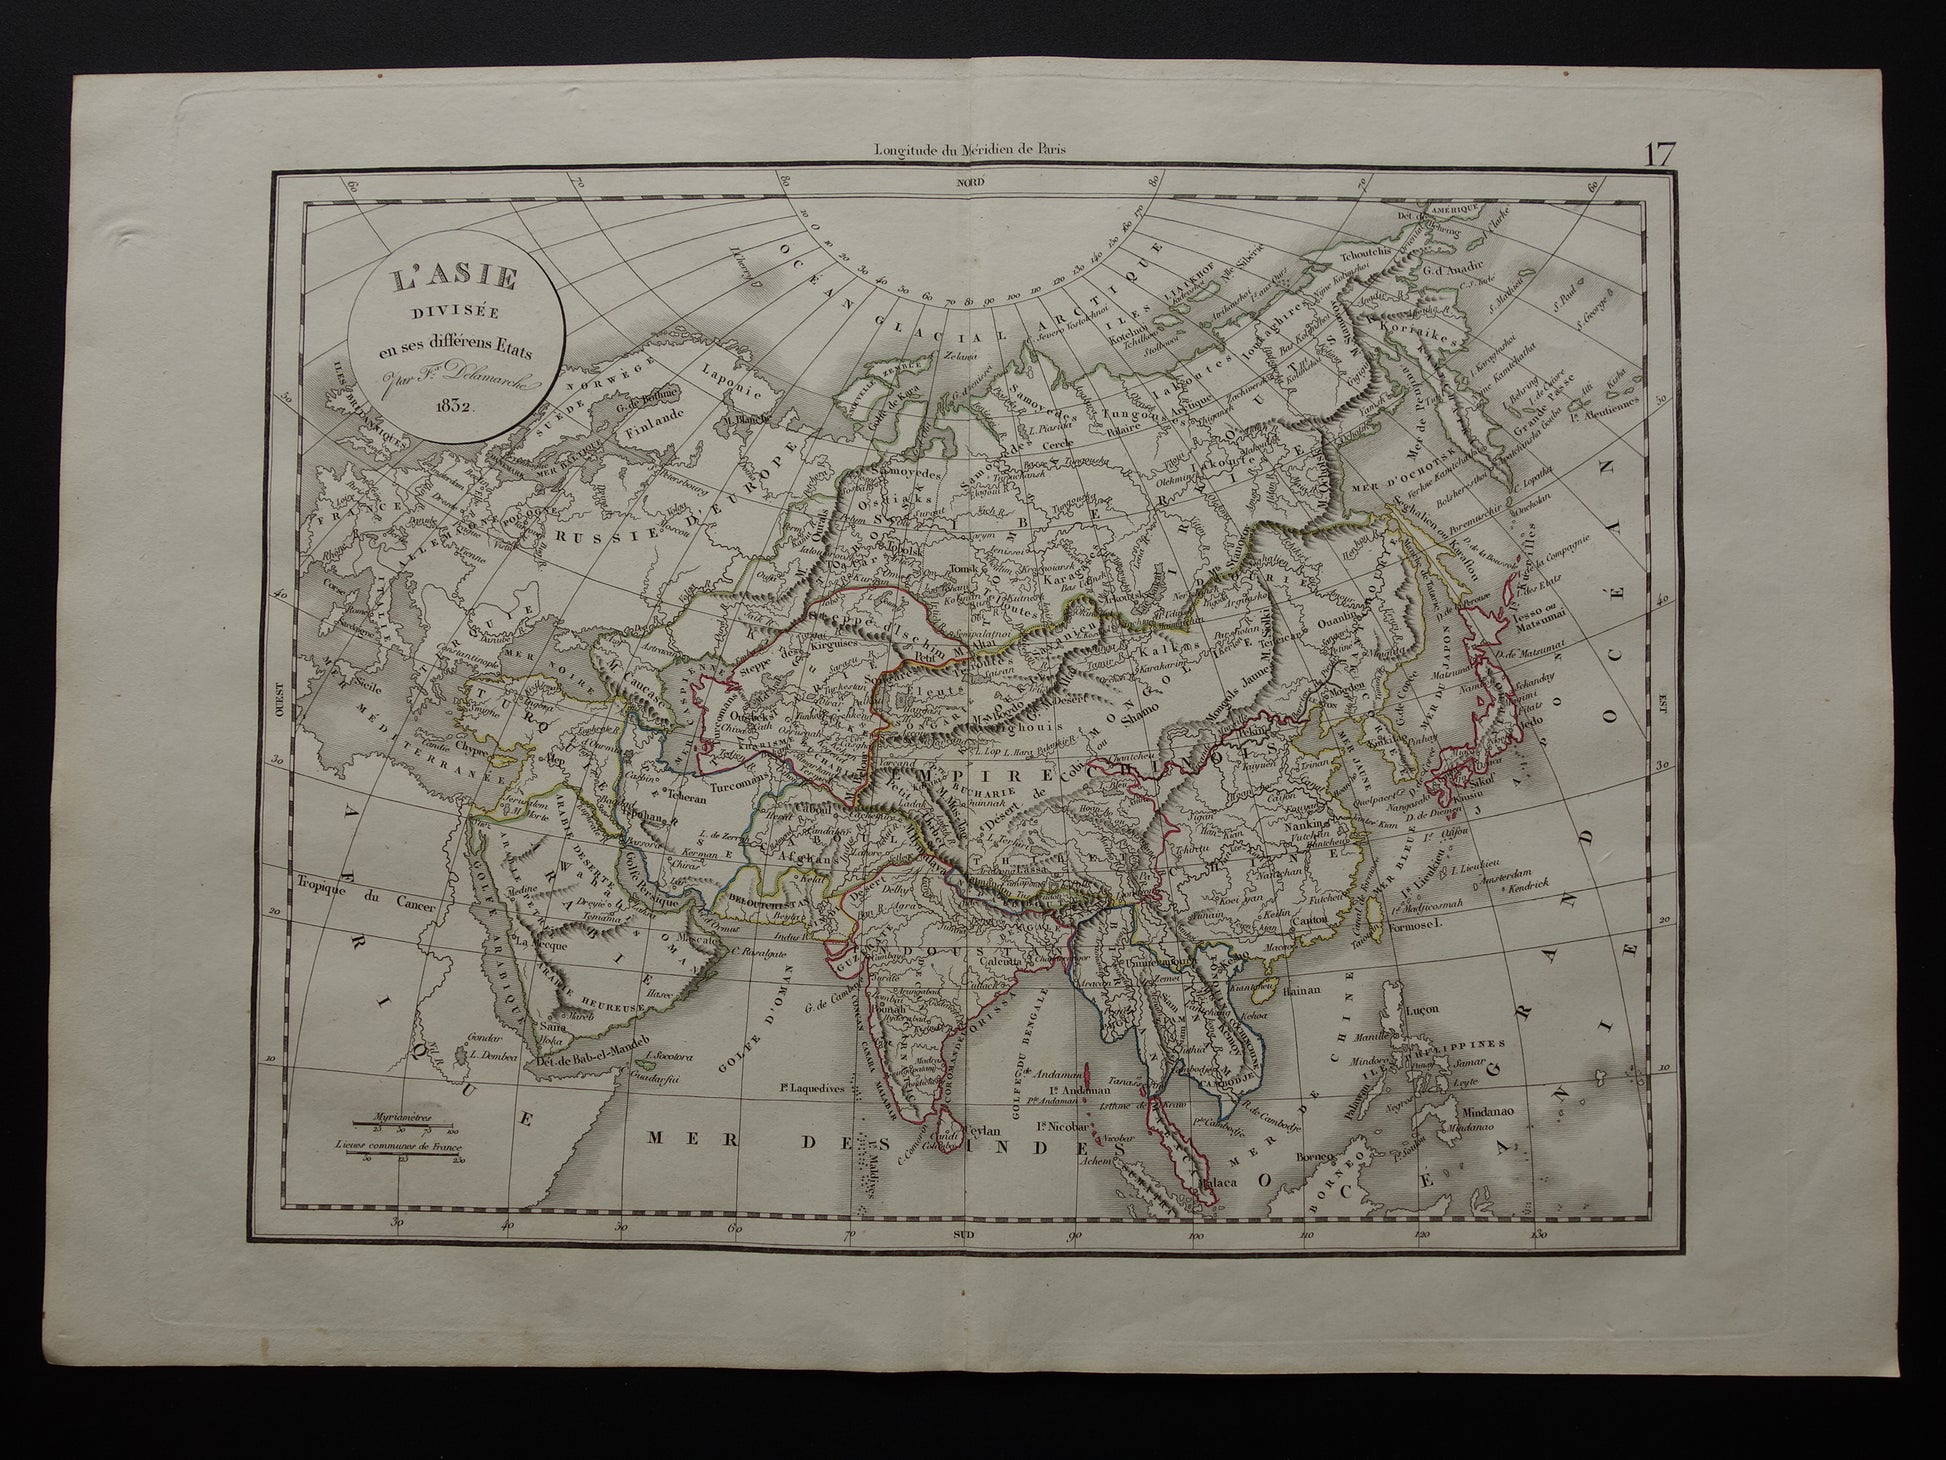  l'Asie divisee en ses differens Etats delamarche 1832 map